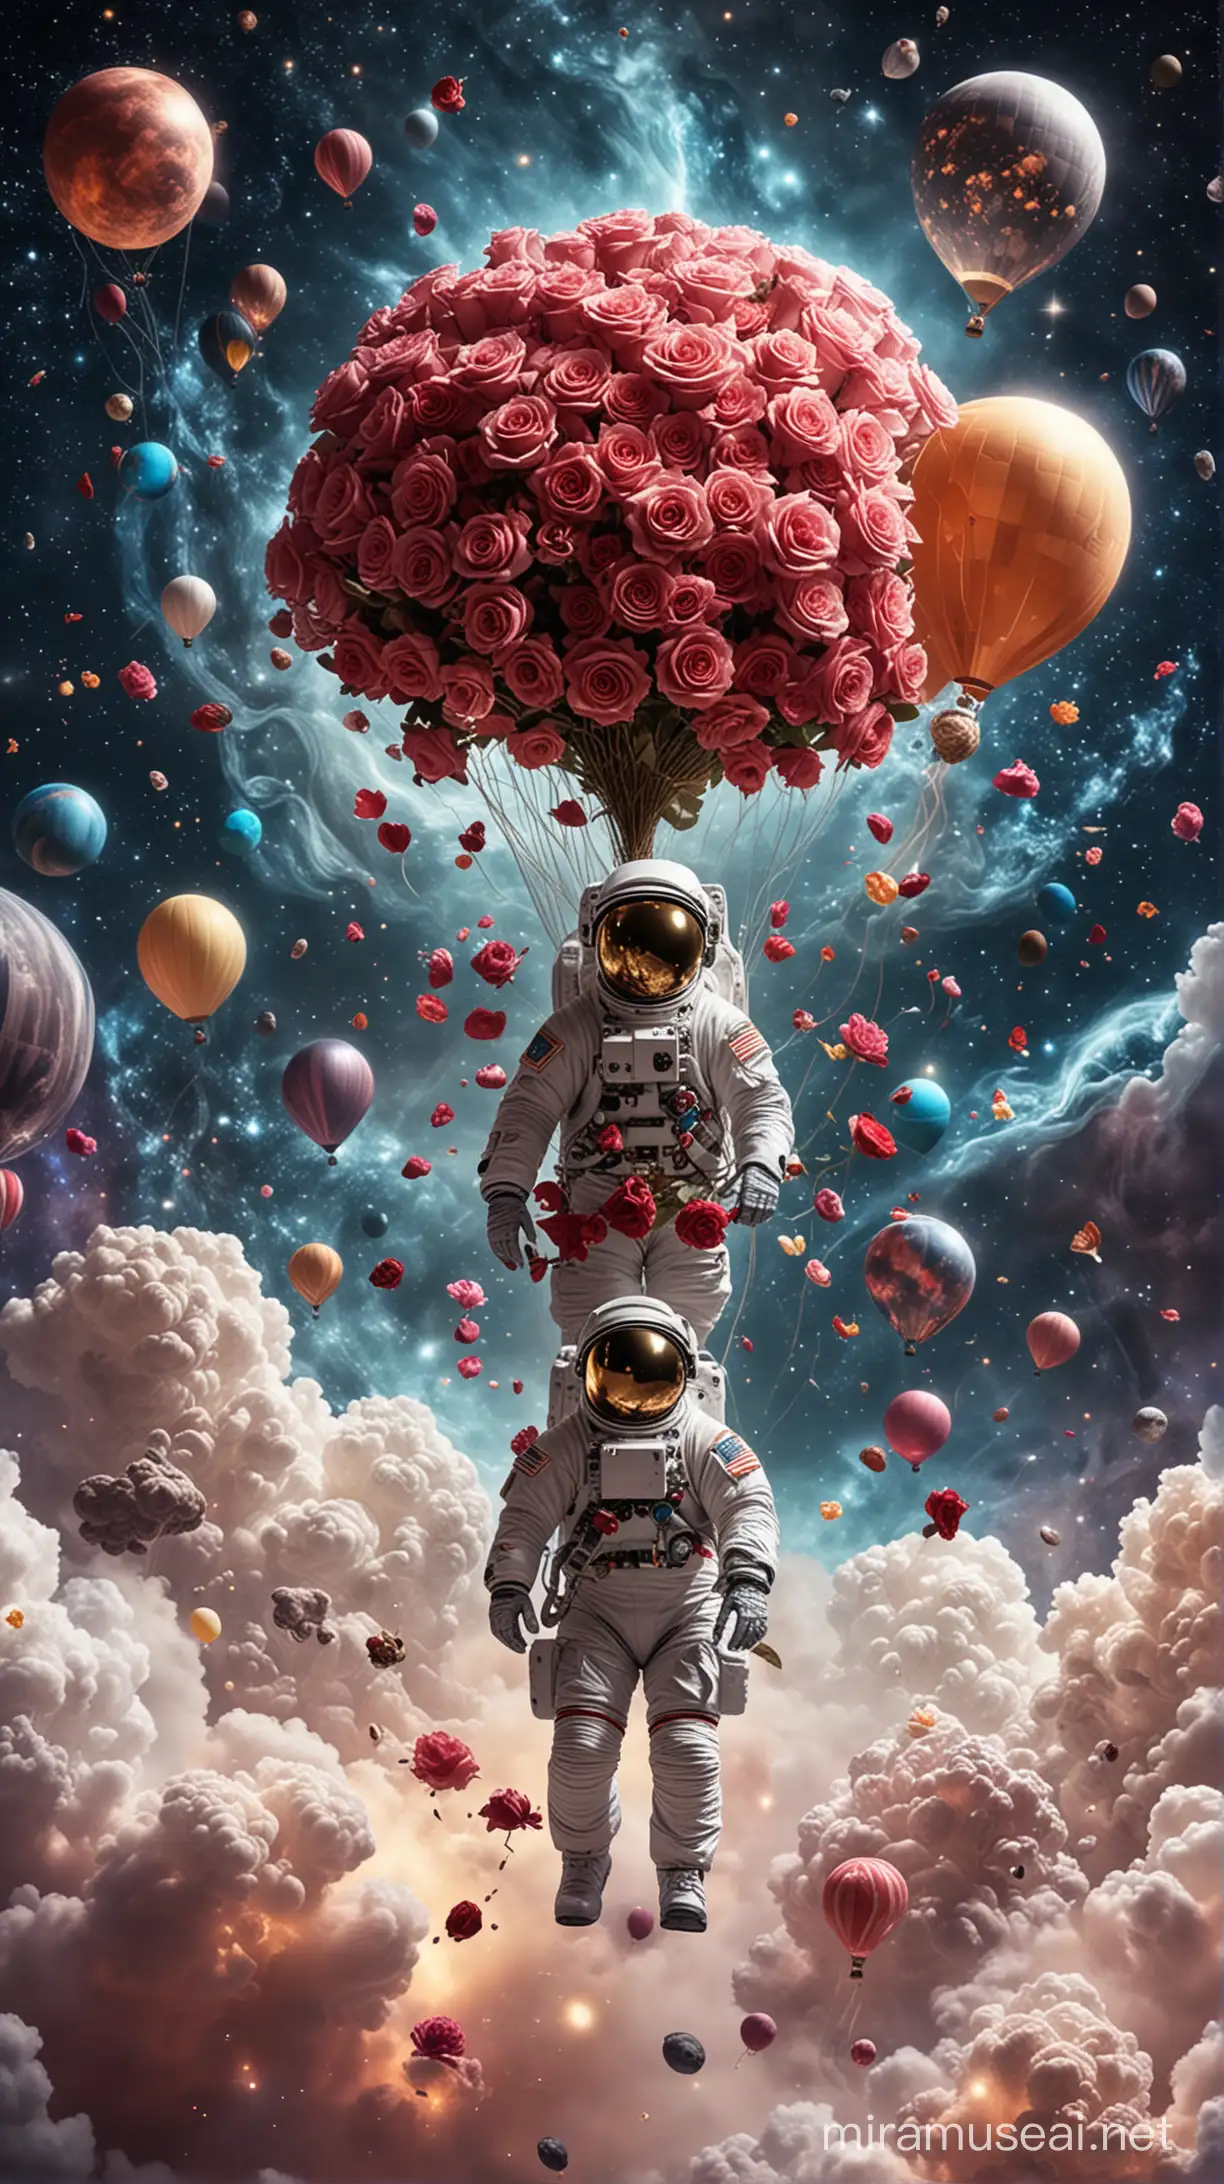 Astronauta paseando sobre las nubes con un ramo de rosas en la mano, con fondo el universo lleno de planetas, estrellas y globos aerostáticos.